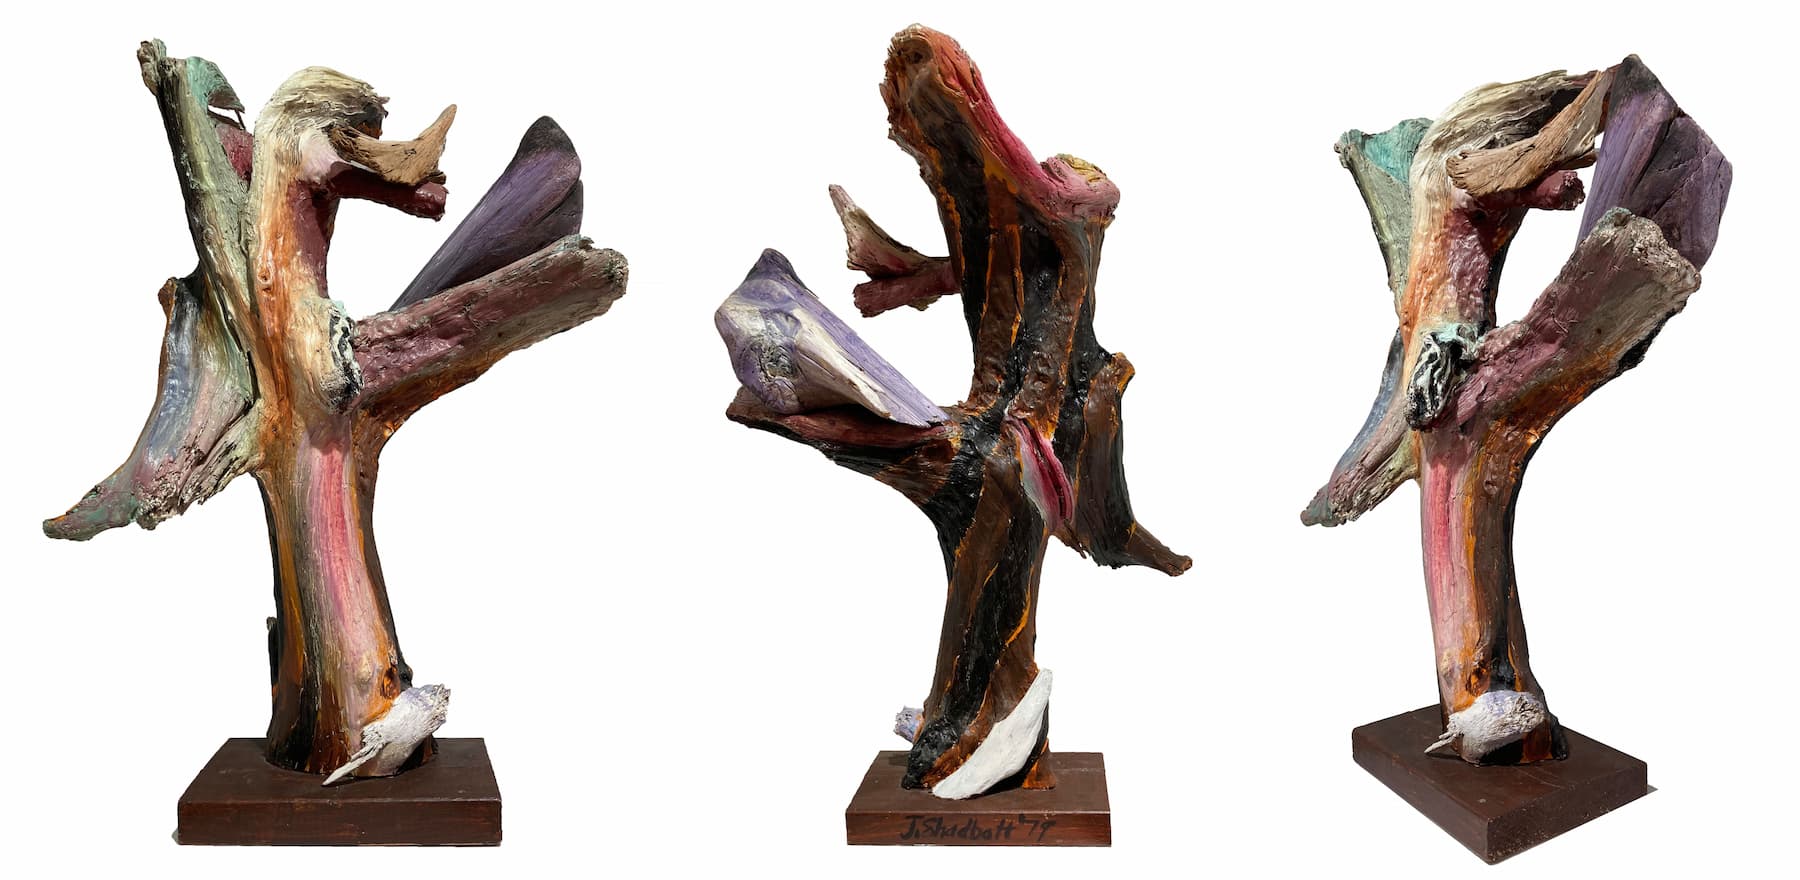 Shadbolt Driftwood sculpture from 1979 rotating